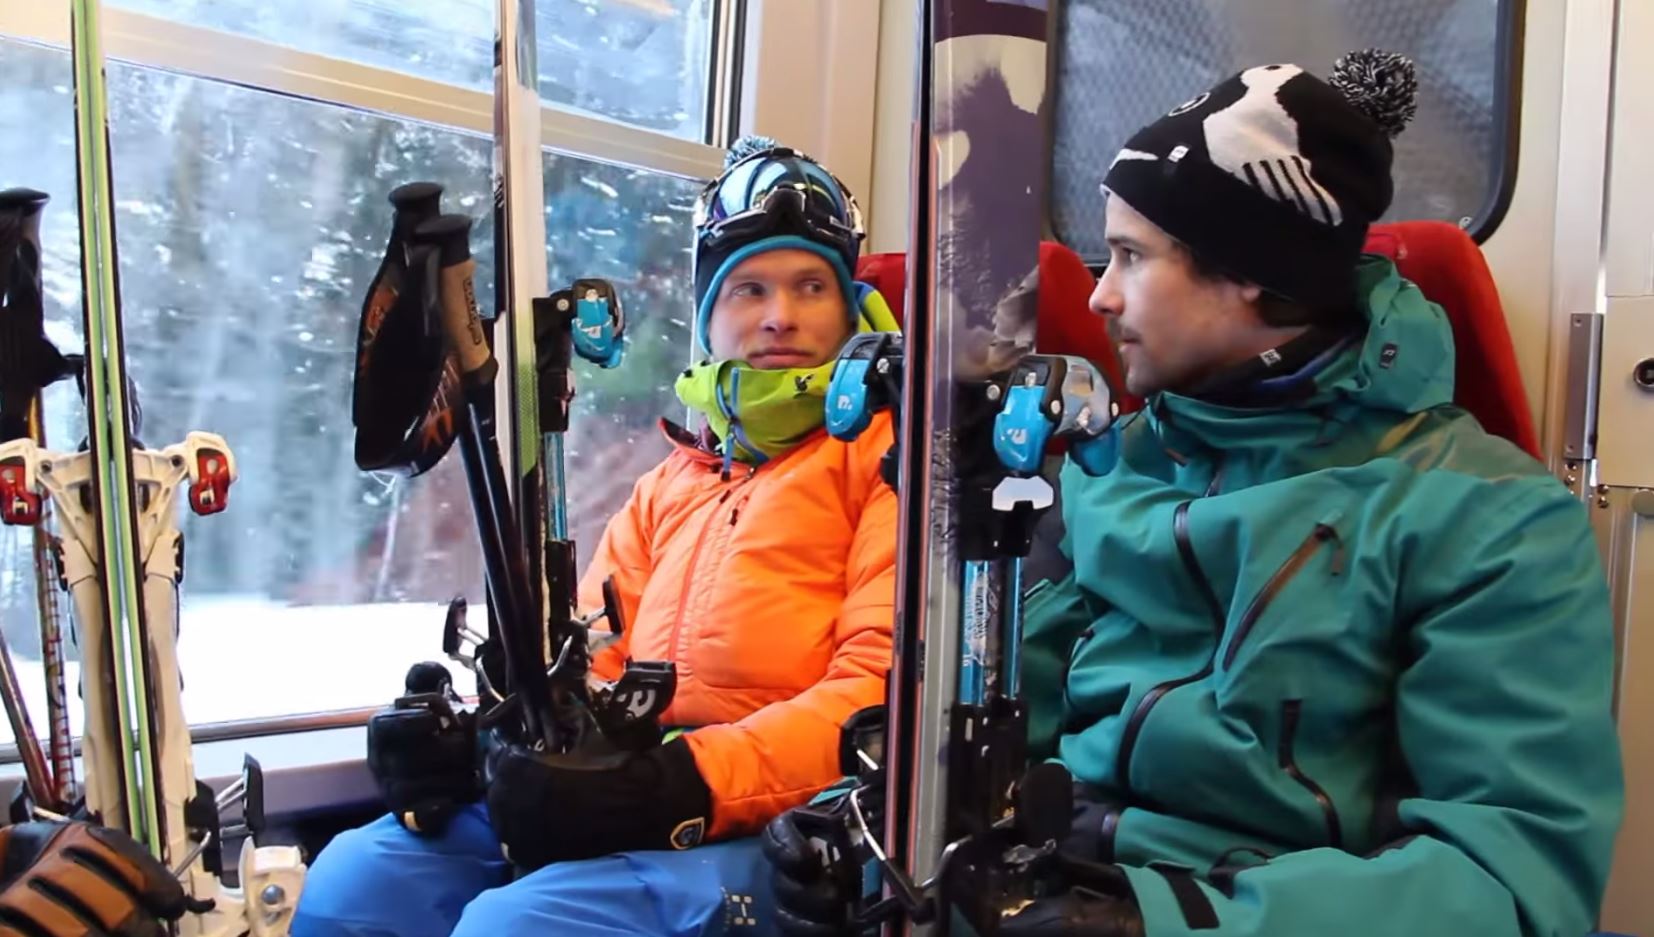 Les deux garçons avaient l'habitude de skier ensemble, comme ici, à Chamonix, en 2012.